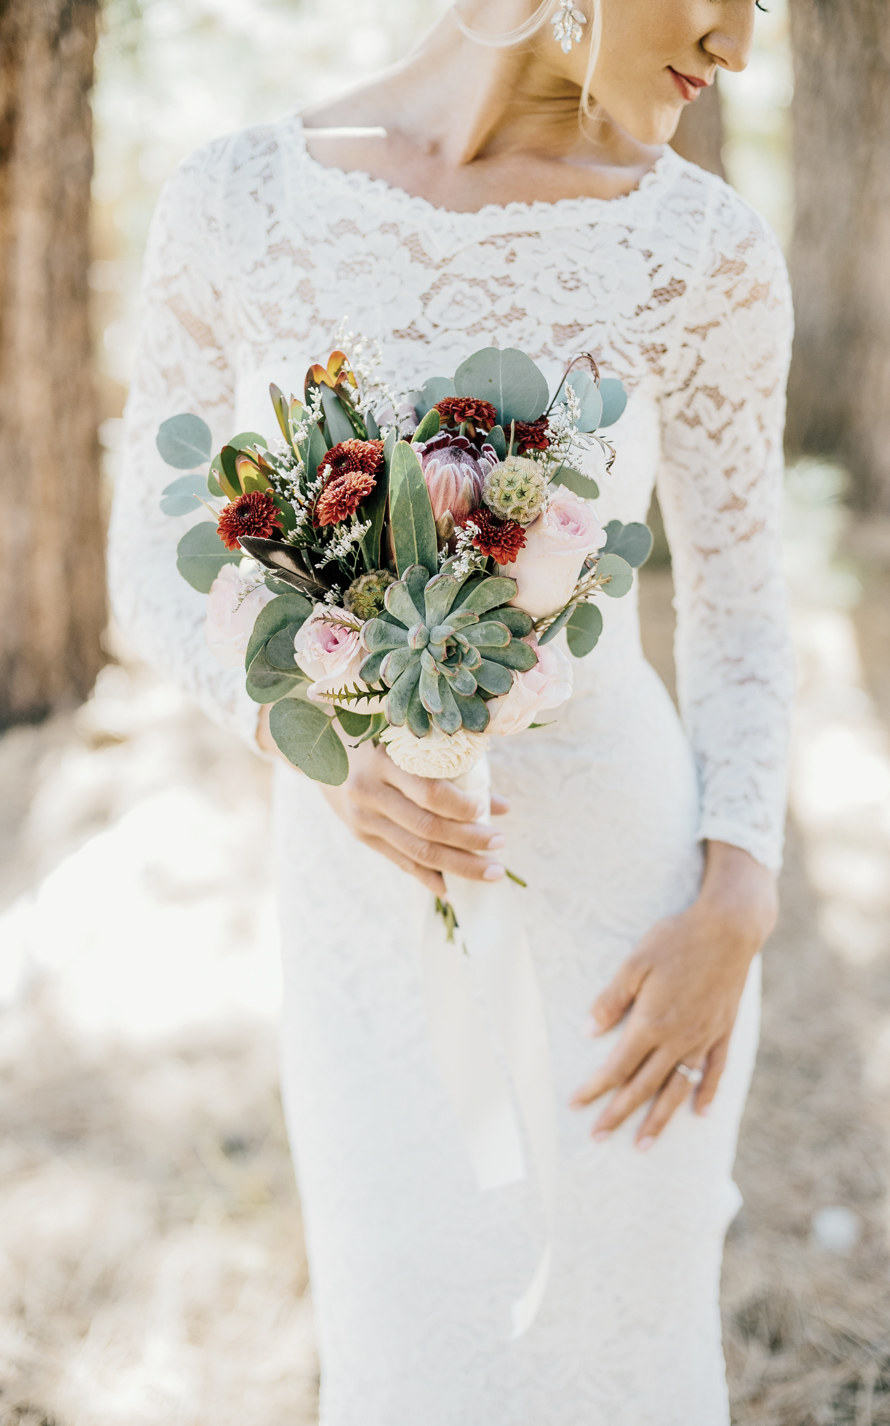 wedding flower centerpieces online